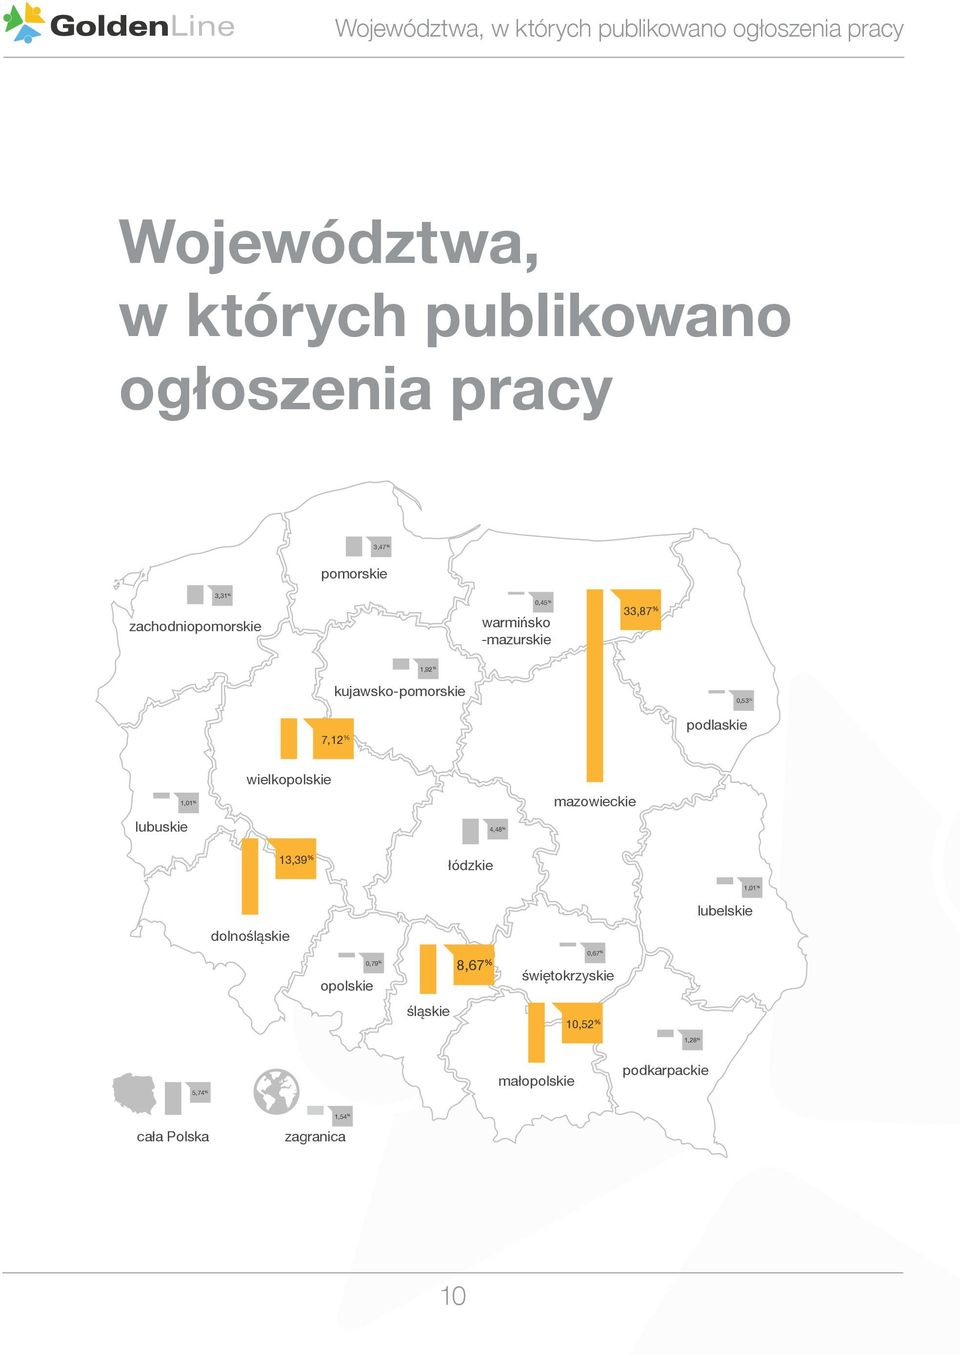 podlaskie lubuskie 1,01 % wielkopolskie 4,48 % mazowieckie 13,39 % łódzkie dolnośląskie opolskie 0,79 % śląskie